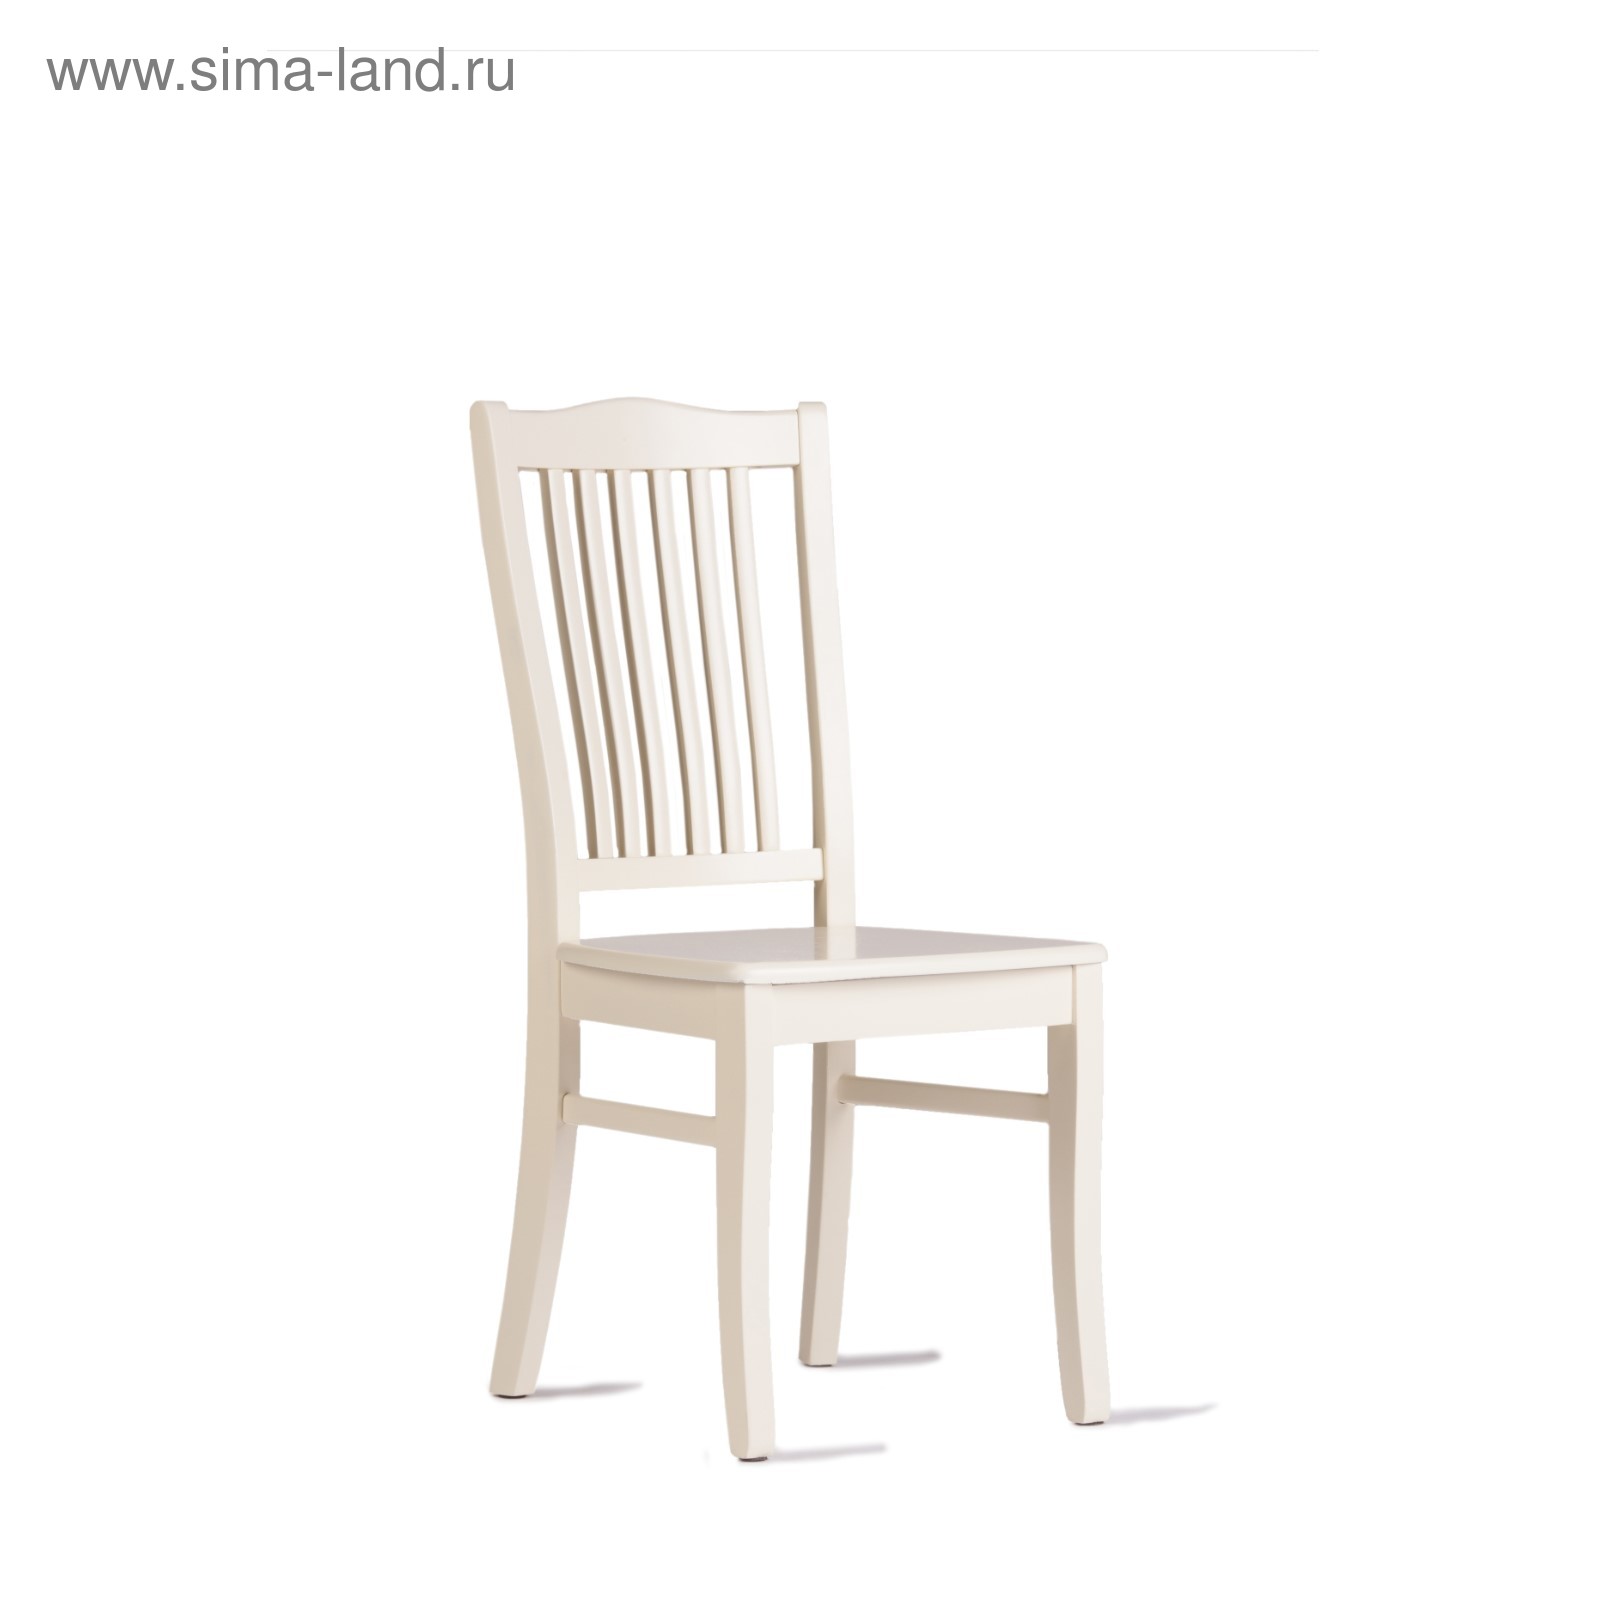 стулья для кухни цвет слоновая кость